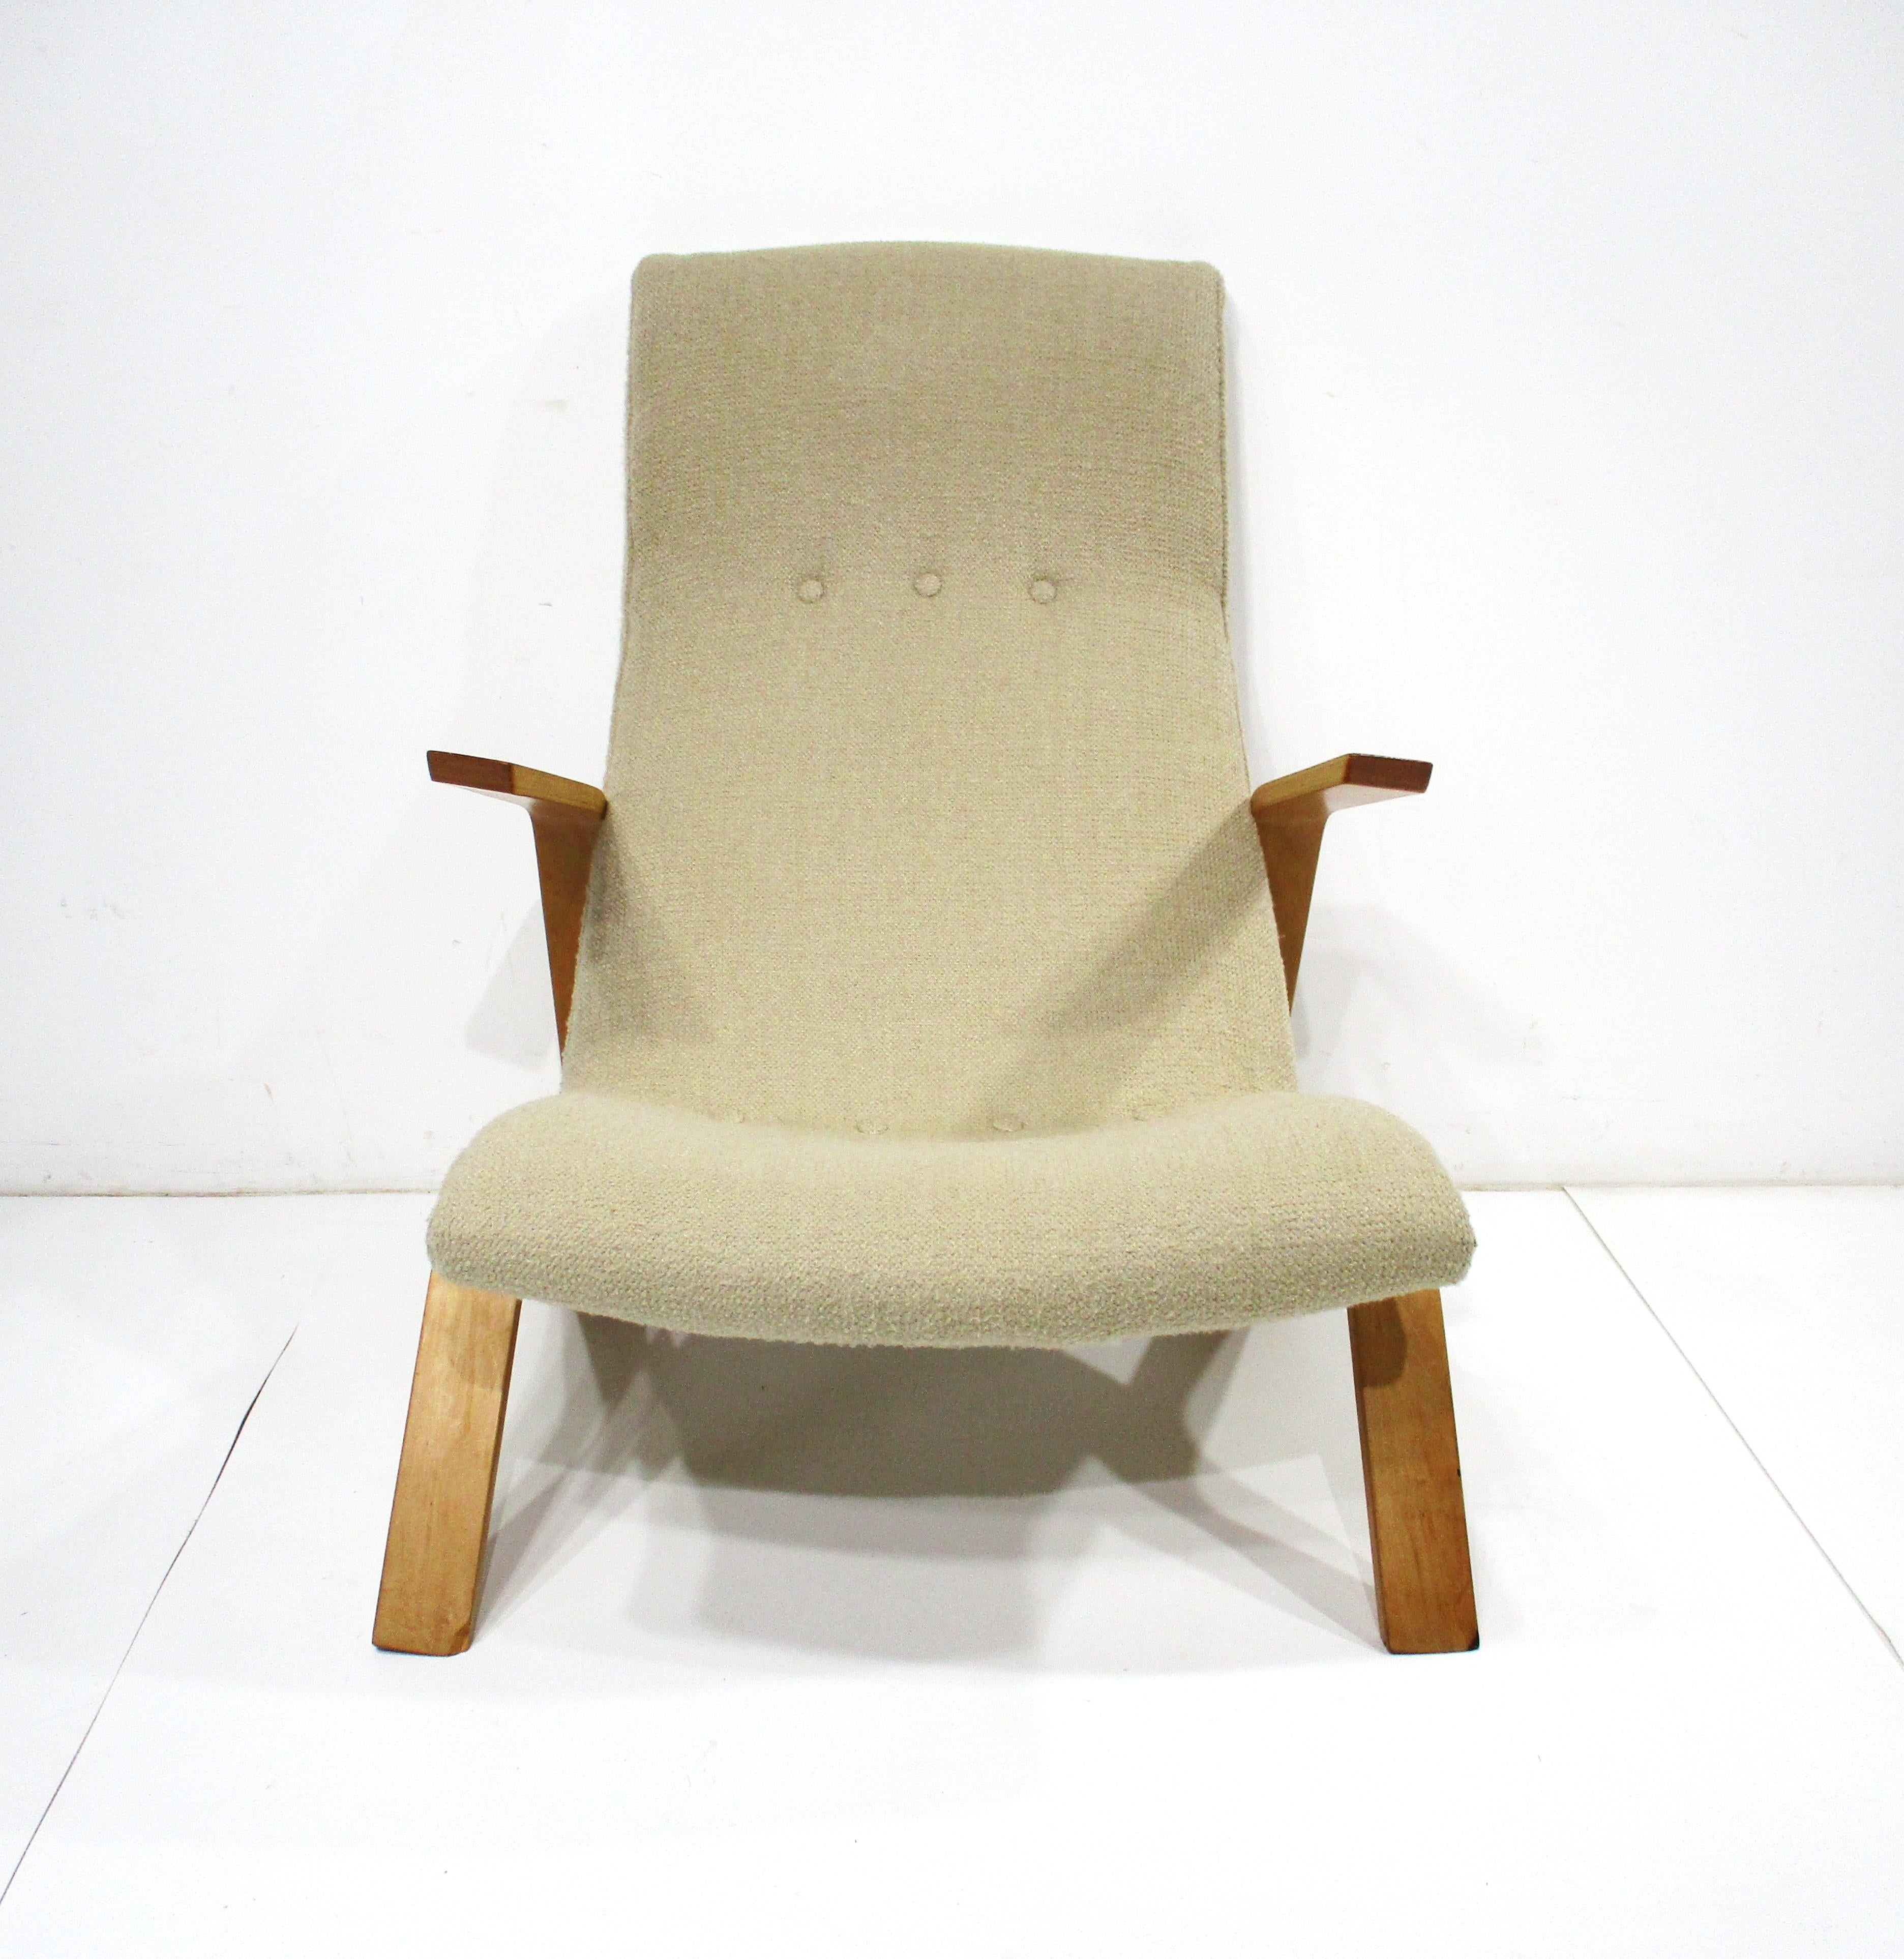 Eine frühe Produktion Grasshopper Lounge-Sessel mit schönen skulpturalen Arme und Beine Design. Die Polsterung ist ein mellow Haferflocken Farbe mit der Butter Scotch Birke Arme machen ganz die Aussage. Der Stuhl ist sehr bequem mit den schrägen